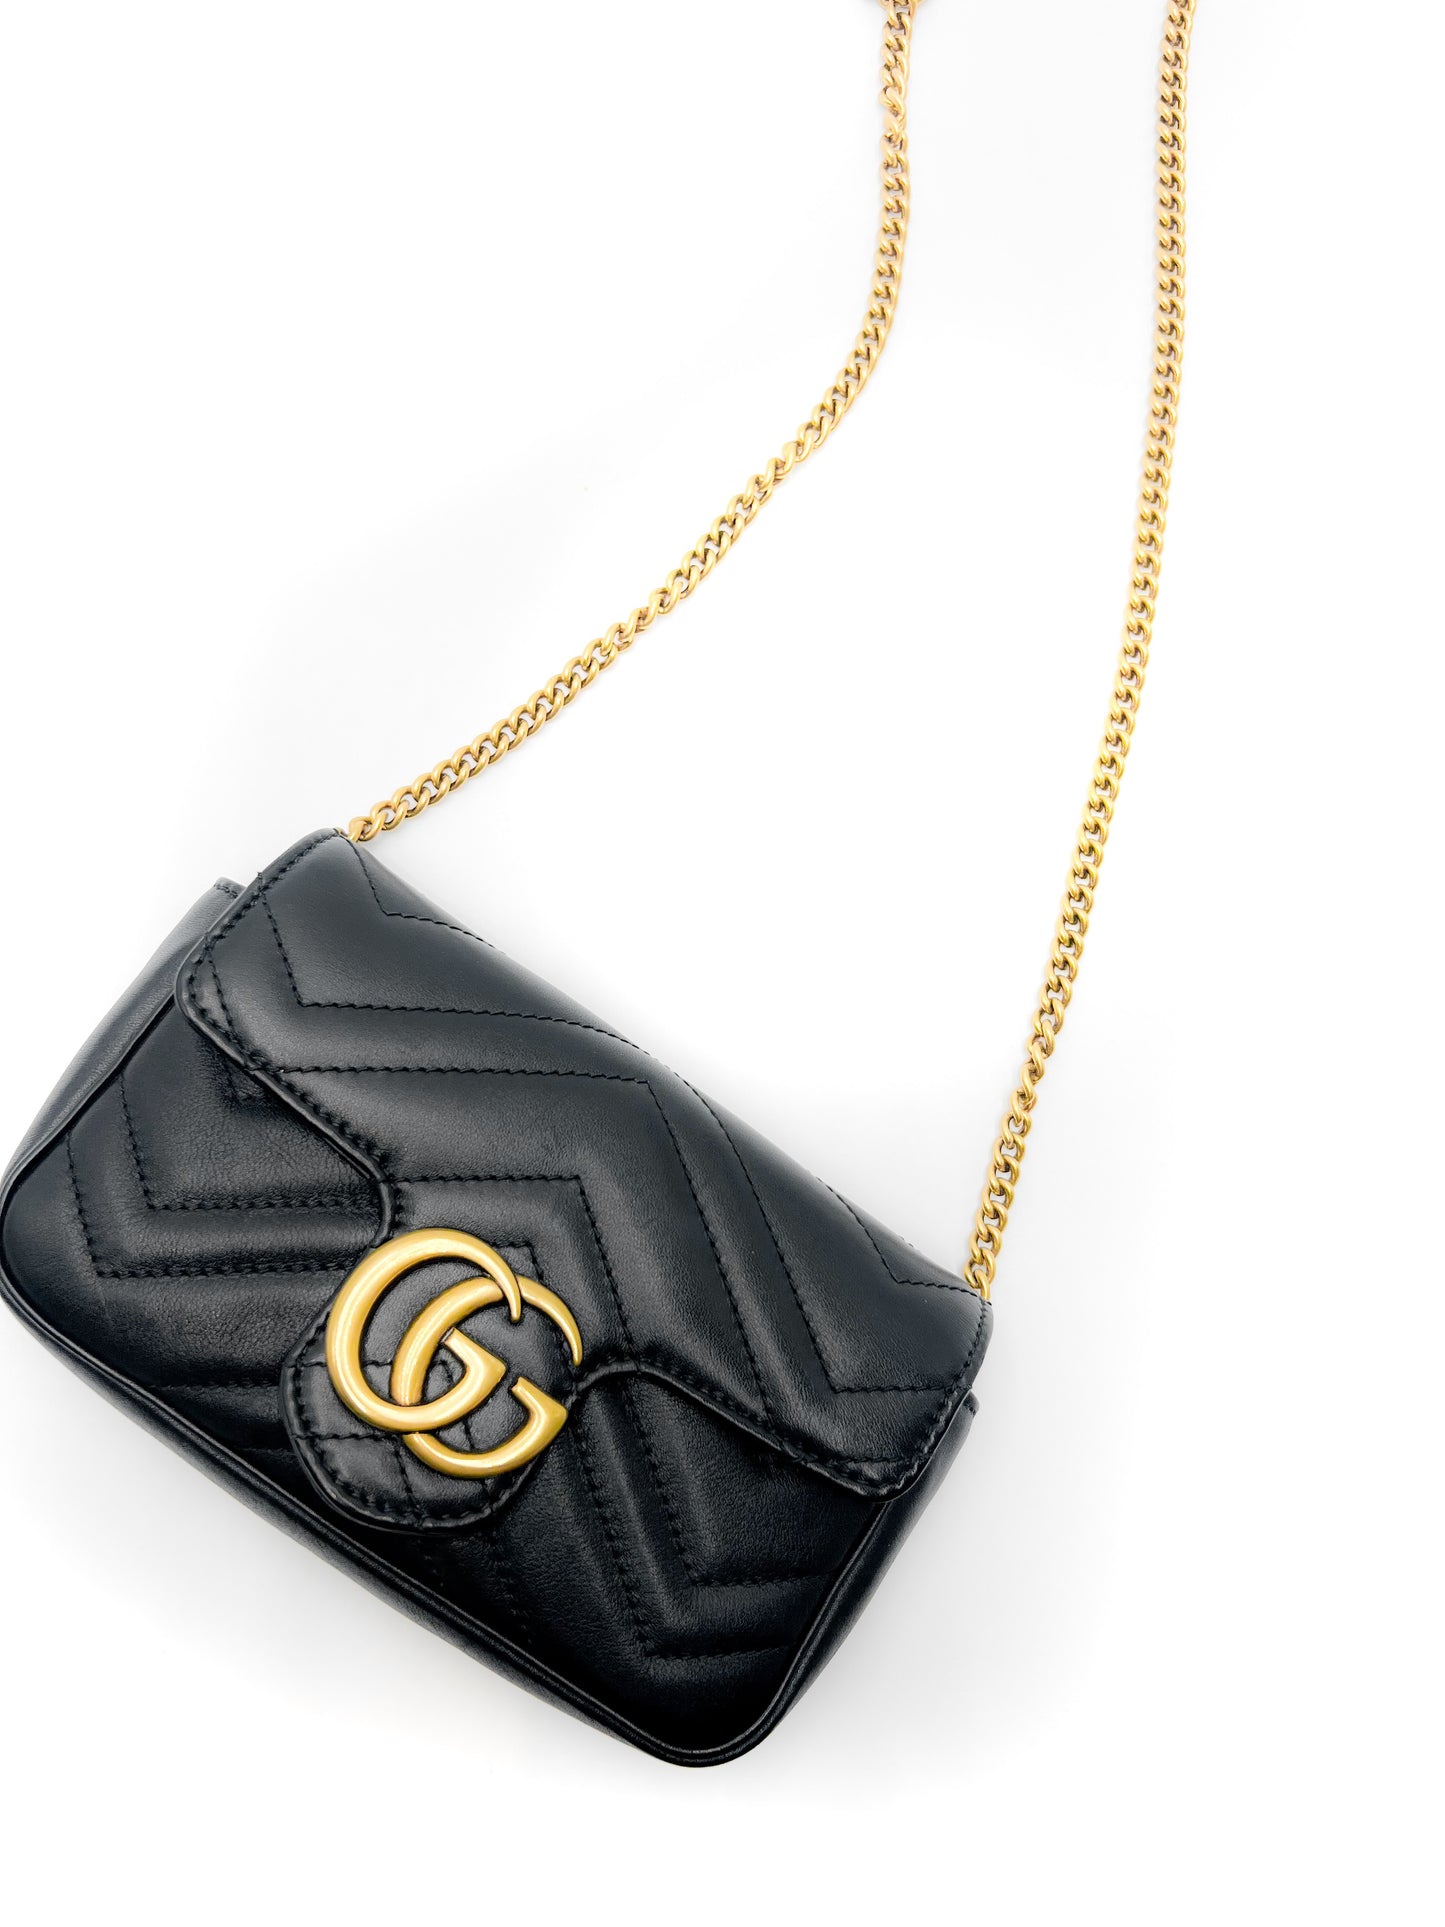 Gucci Black Super Mini GG Marmont Bag